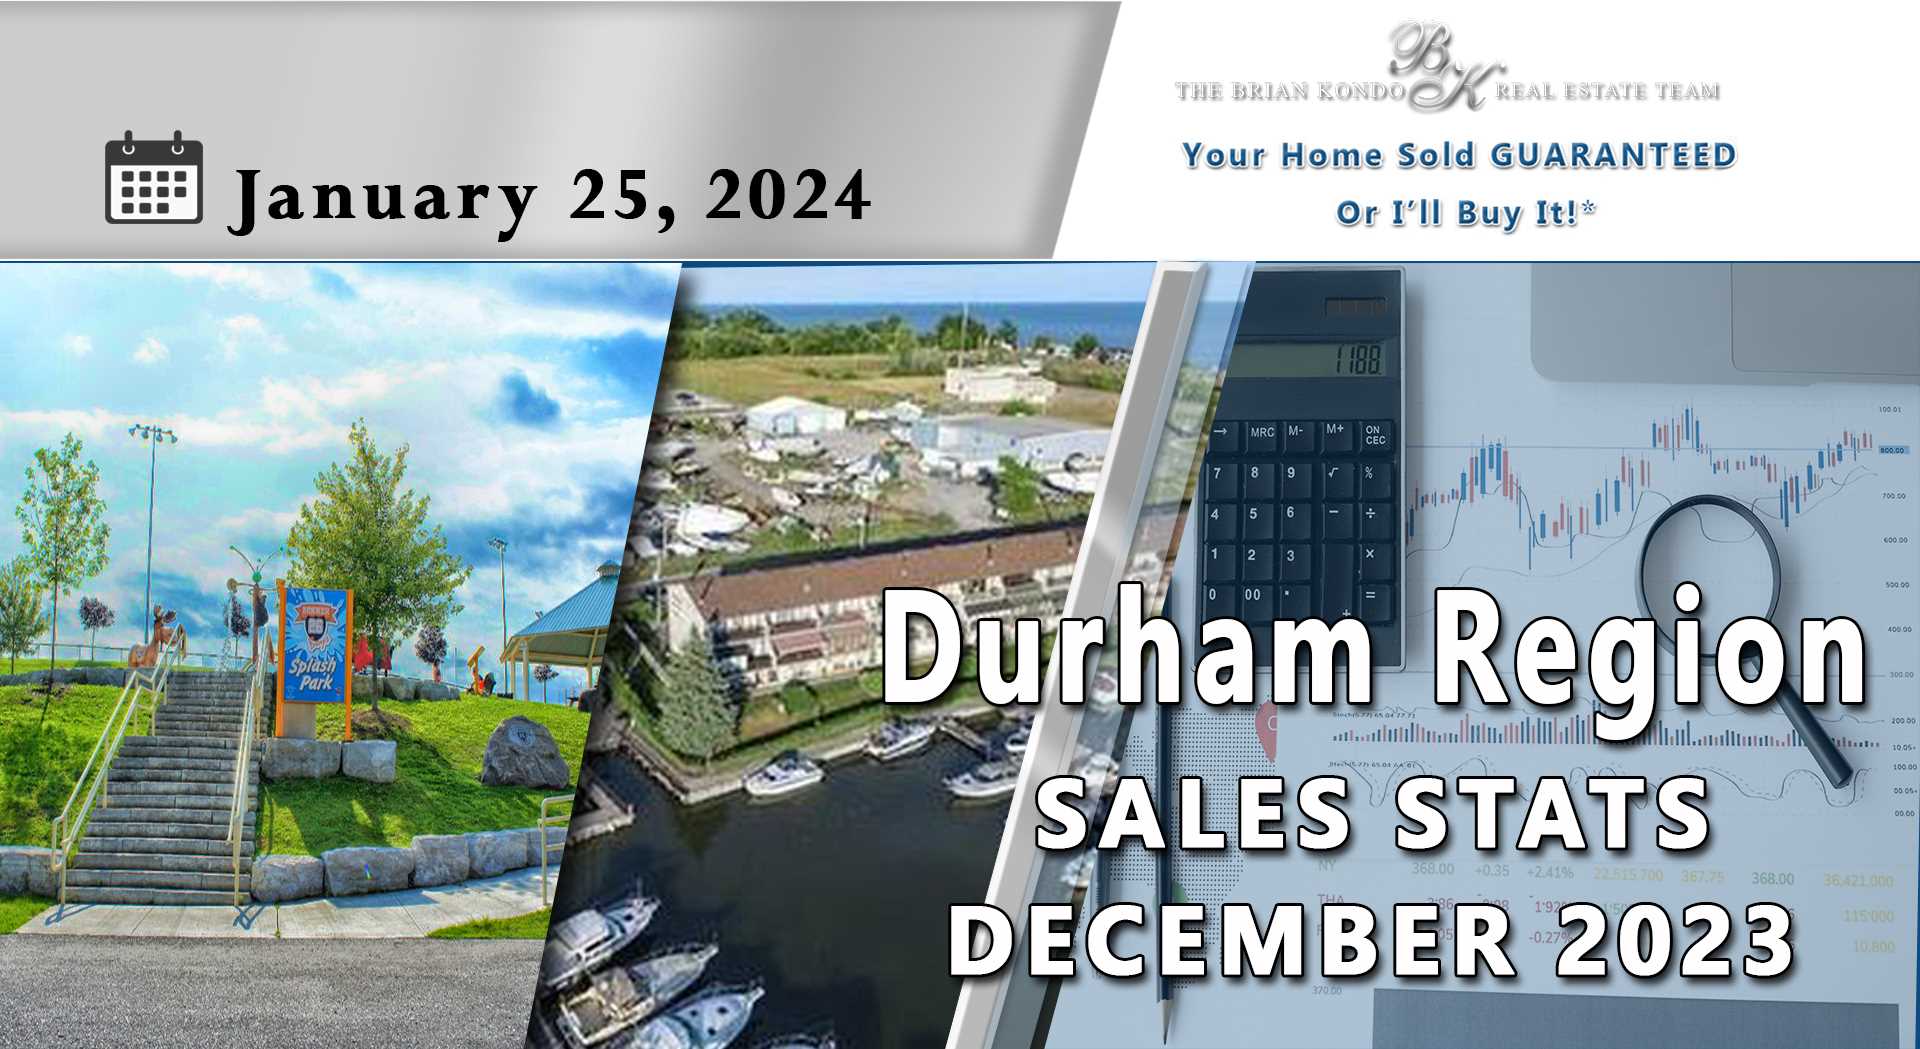 DURHAM REGION SALES STATS DECEMBER 2023